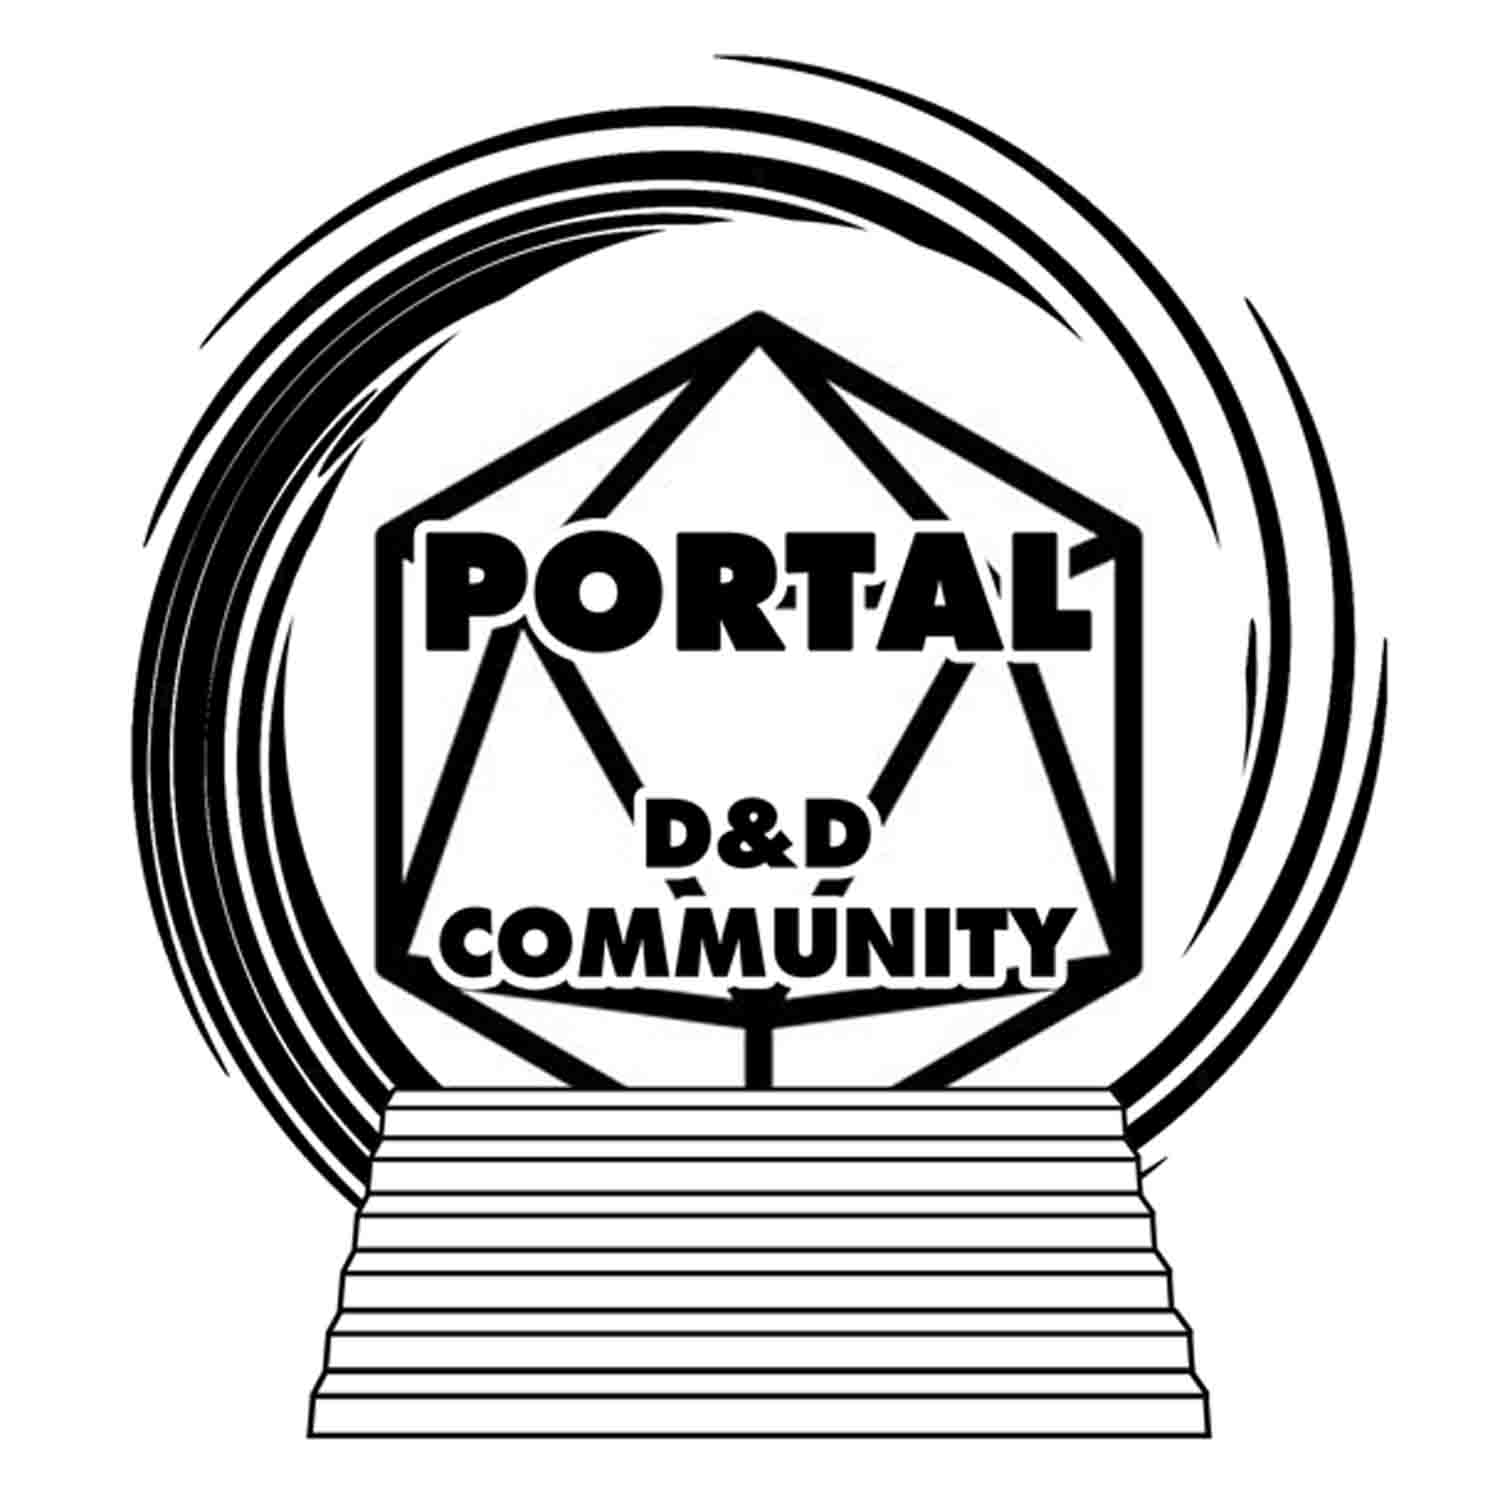 Portal D&D Community